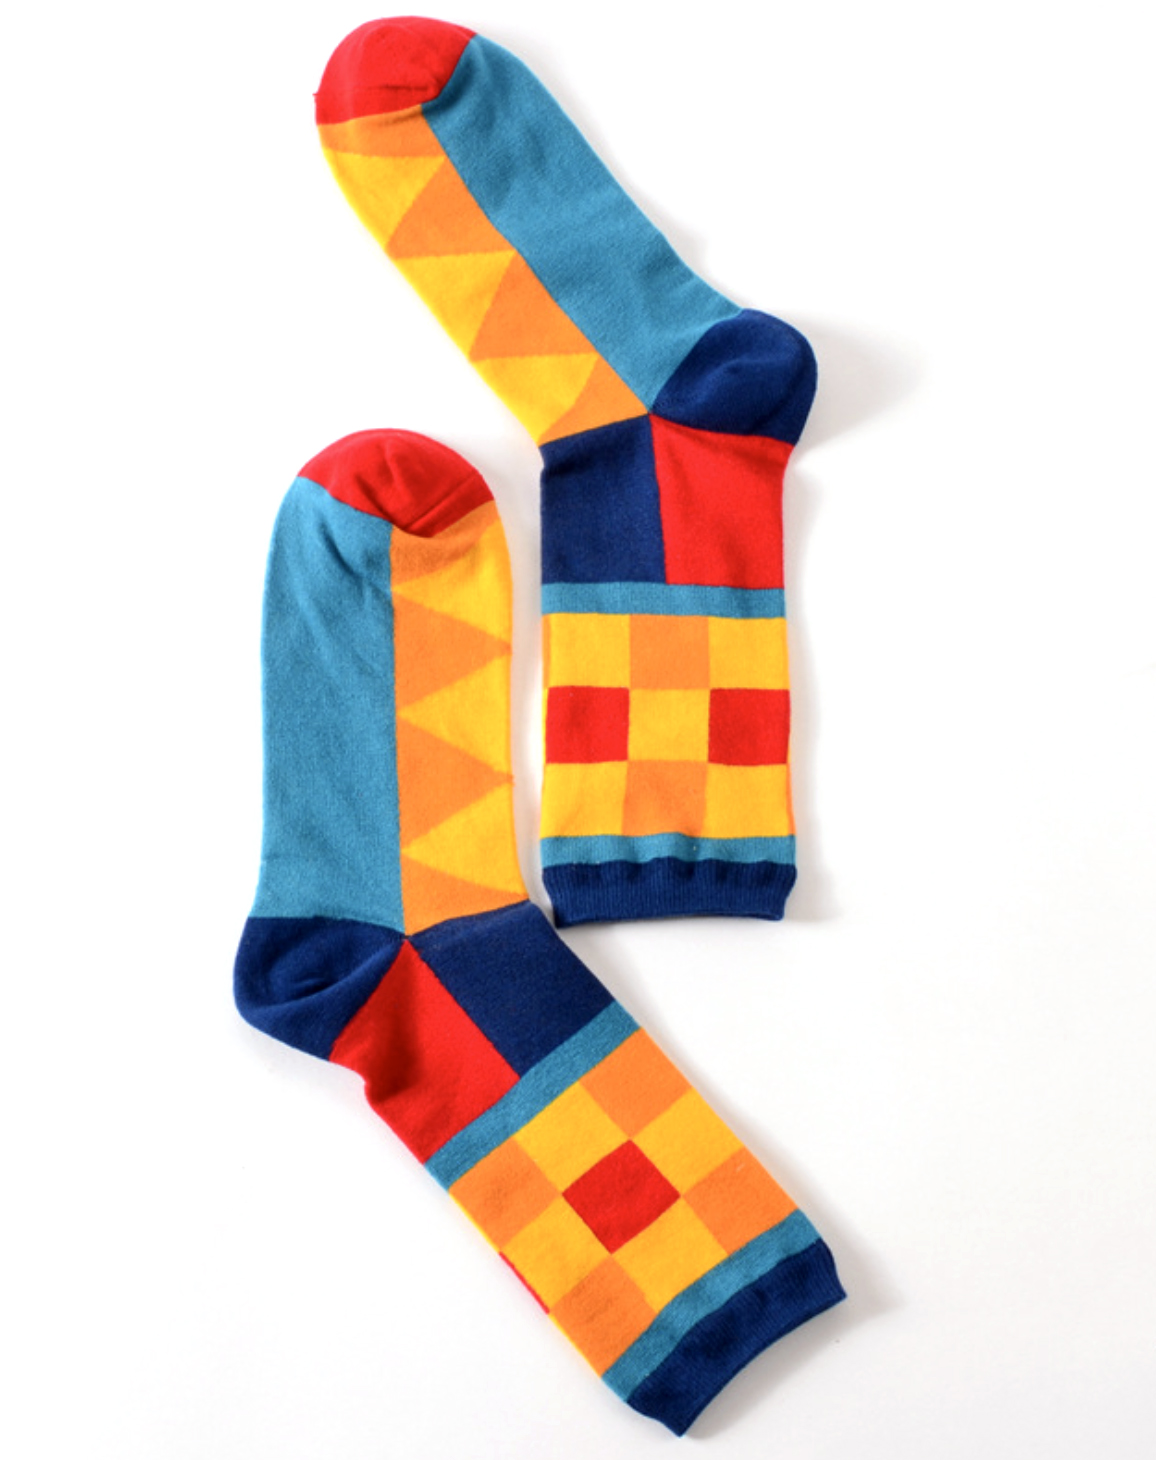 Носки цветные с геометрическими фигурами описание: Состав - Хлопок 50%, полиэстер 30%, нейлон 17%, спандекс 3%, Размер - Размер: 39-44, Цвет - Красный, синий, желтый, голубой, Страна производства - Китай;